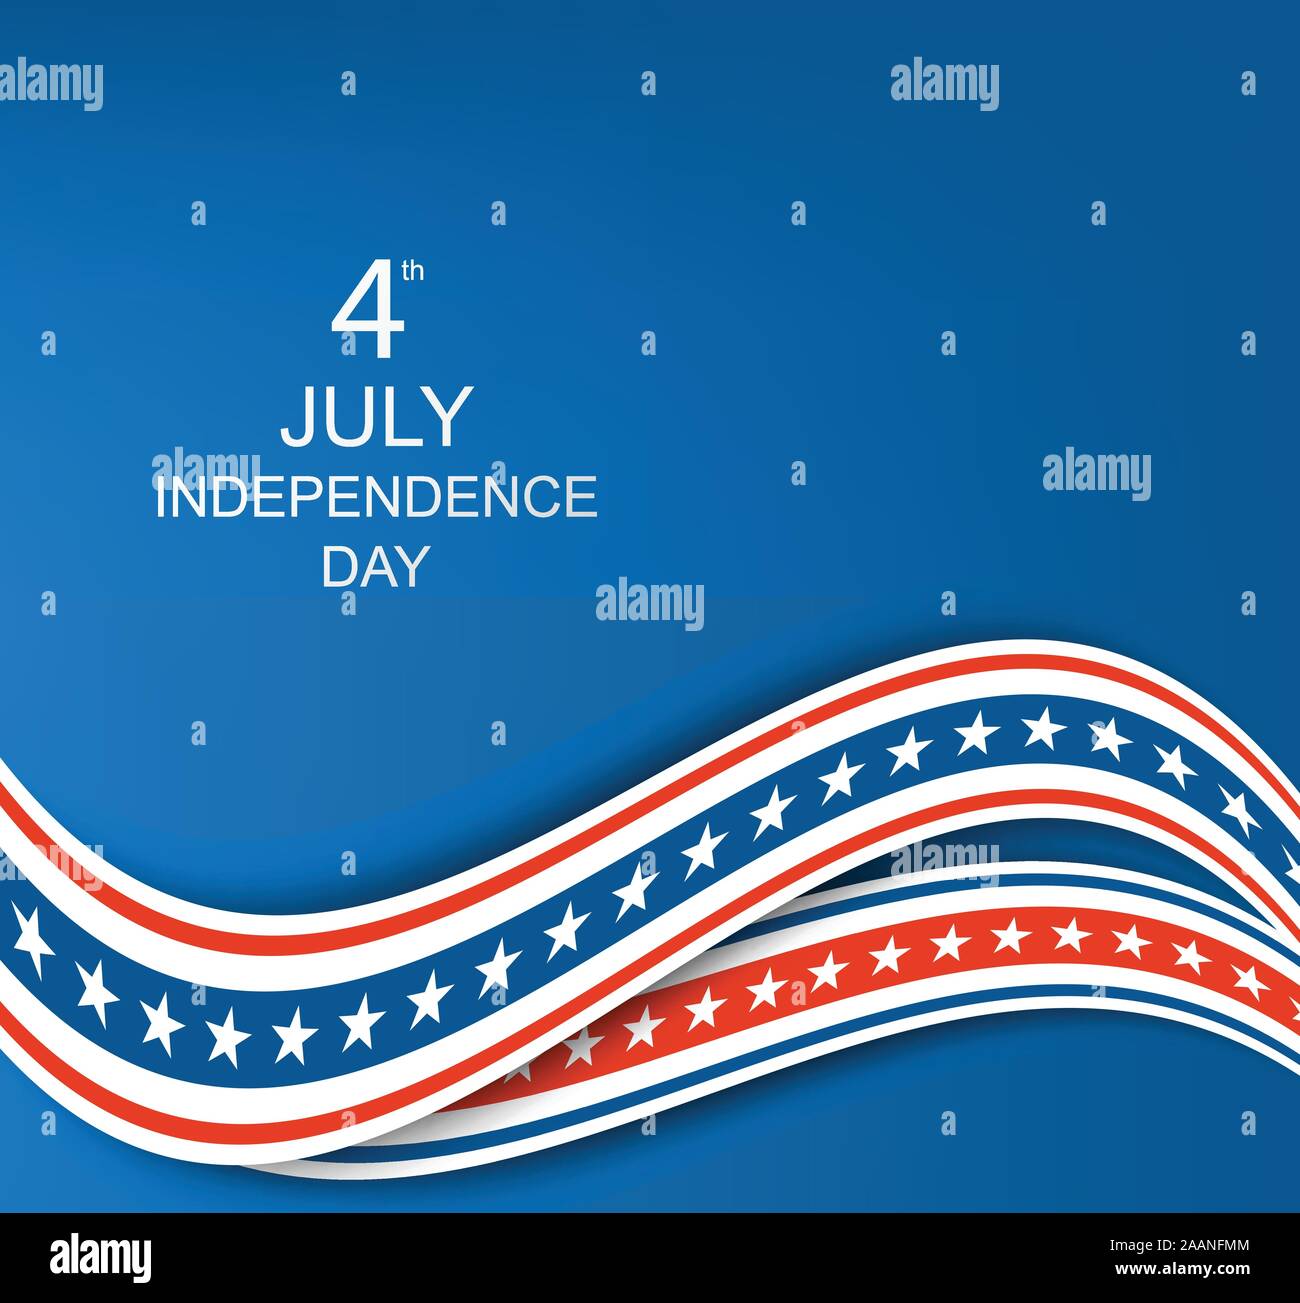 Happy Independence Day Card Stati Uniti d'America. Illustrazione Vettoriale